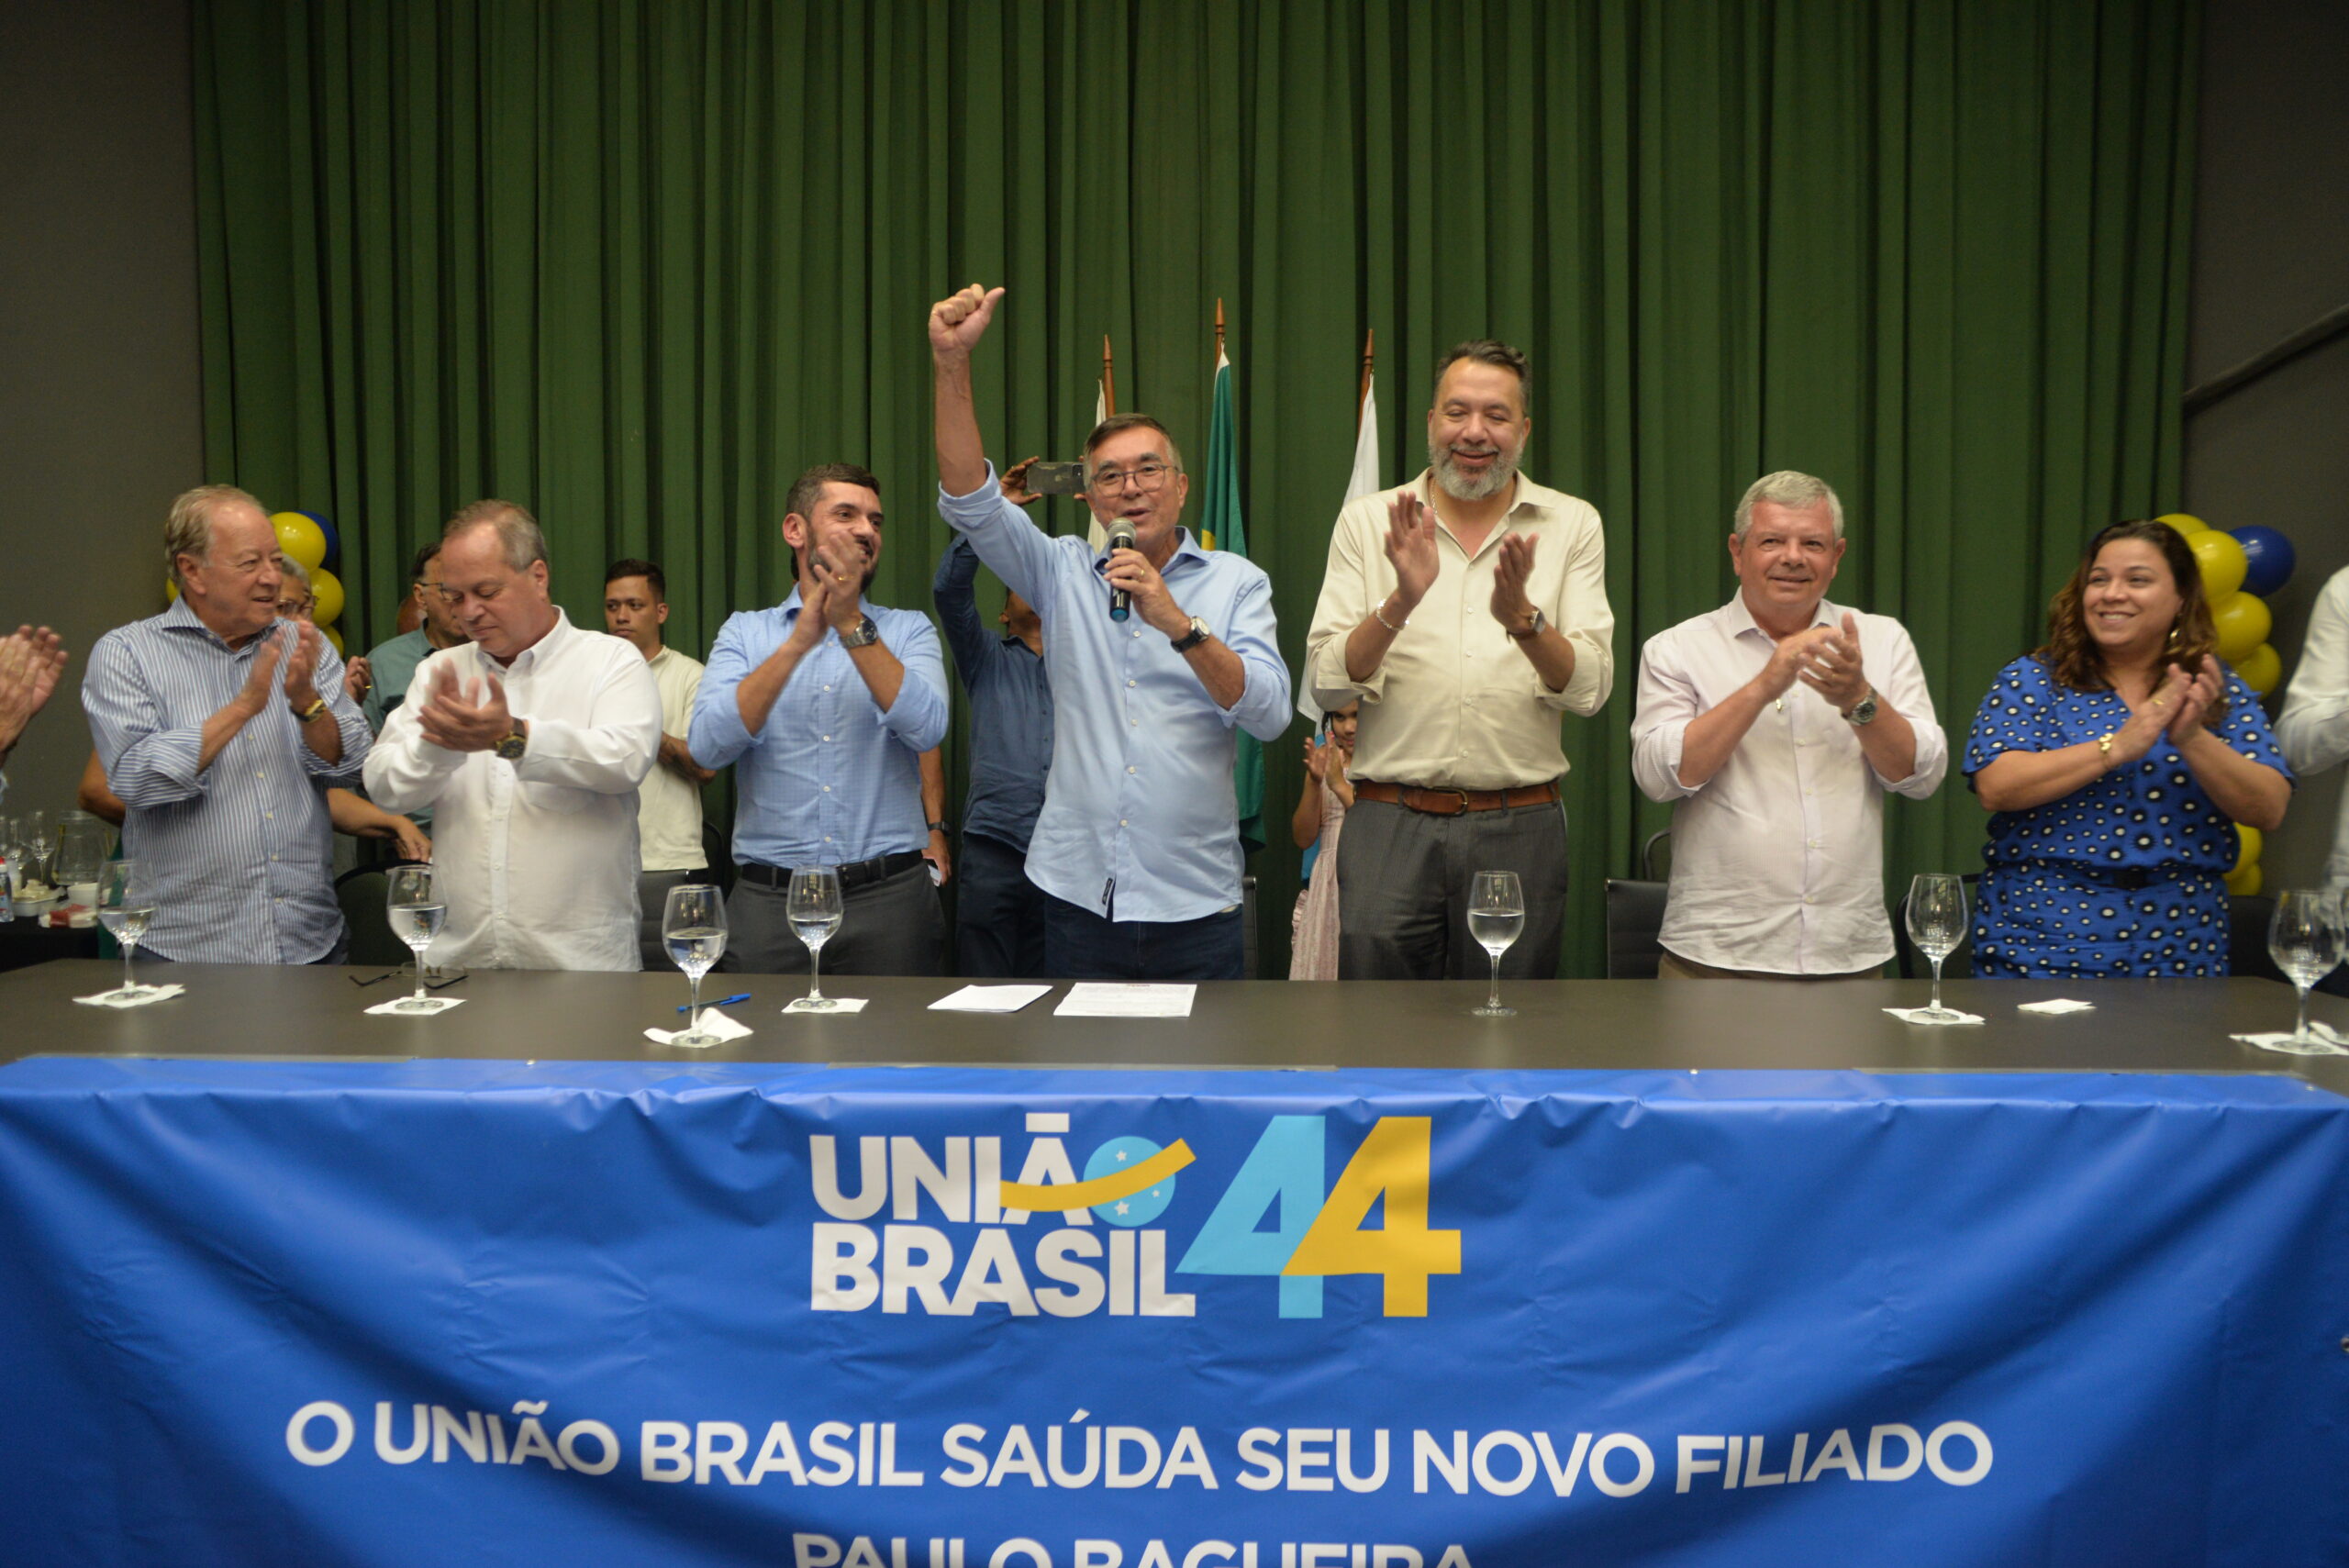 Bagueira se filia ao União Brasil em plenária que lotou o auditório da Acierj 